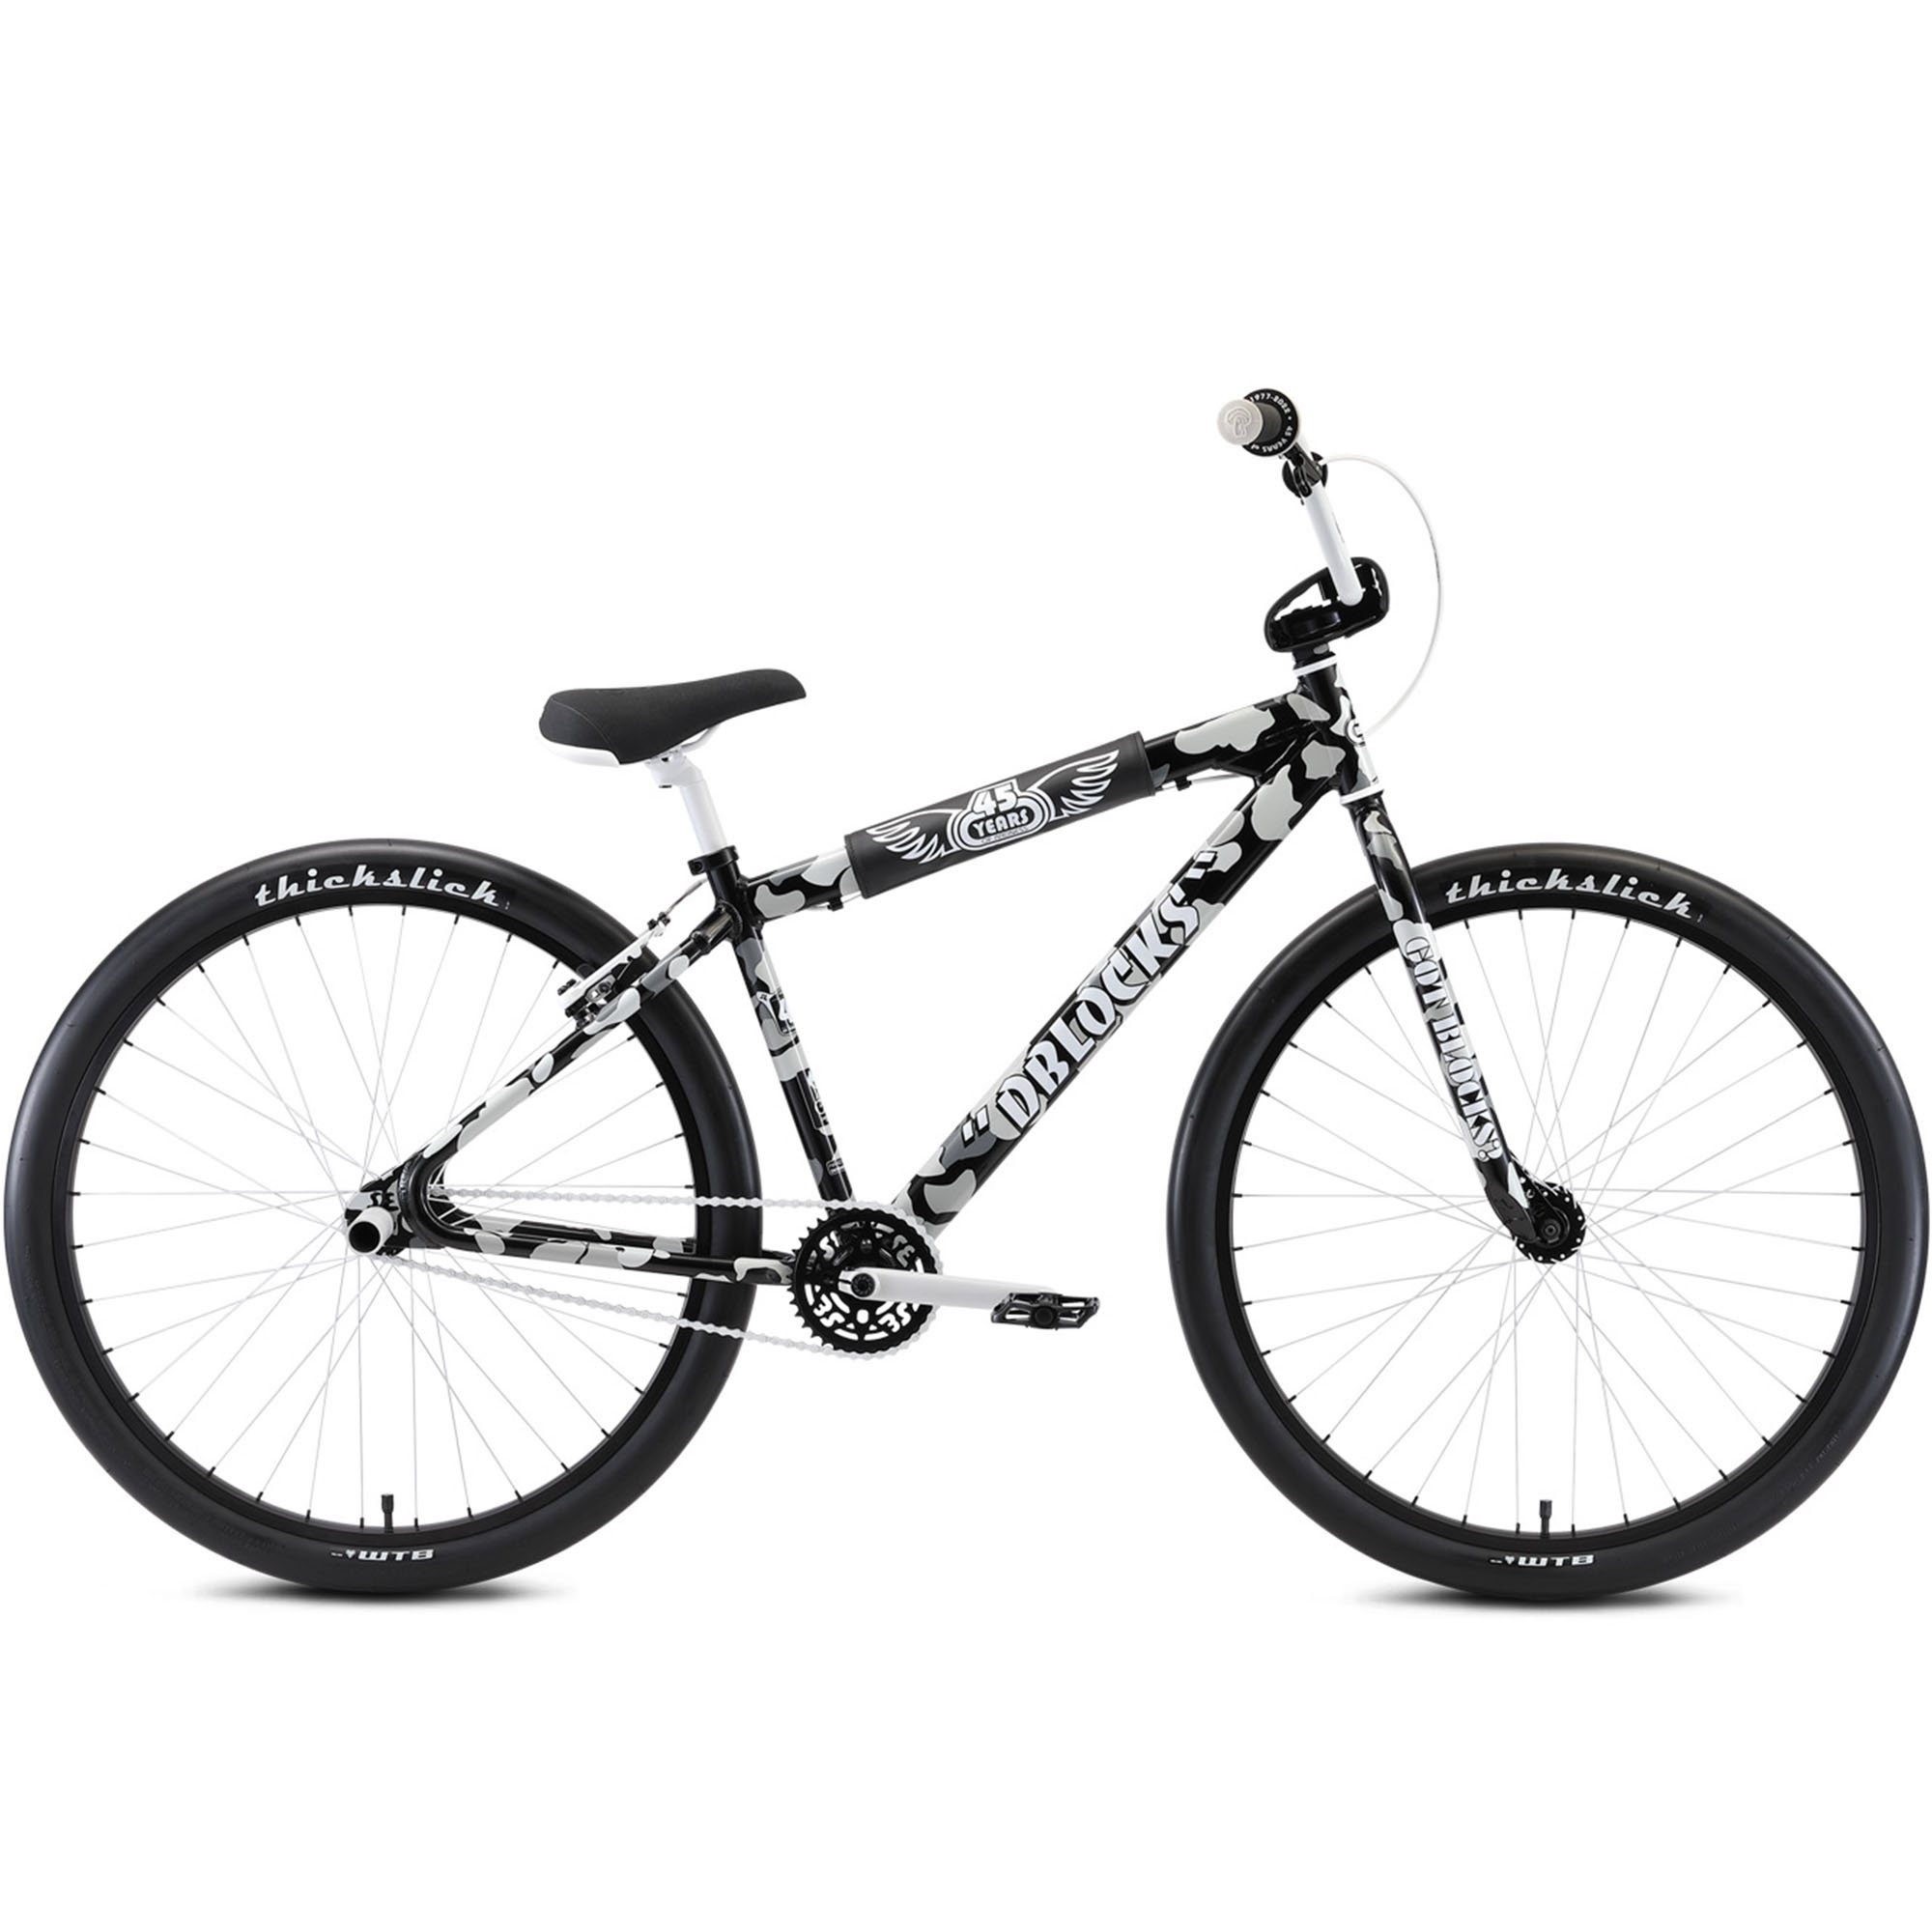 SE Bikes Mountainbike DBlocks Big Ripper, 1 Gang, ohne Schaltung, Wheelie Bike 29 Zoll Fahrrad für Erwachsene und Jugendliche ab 165 cm